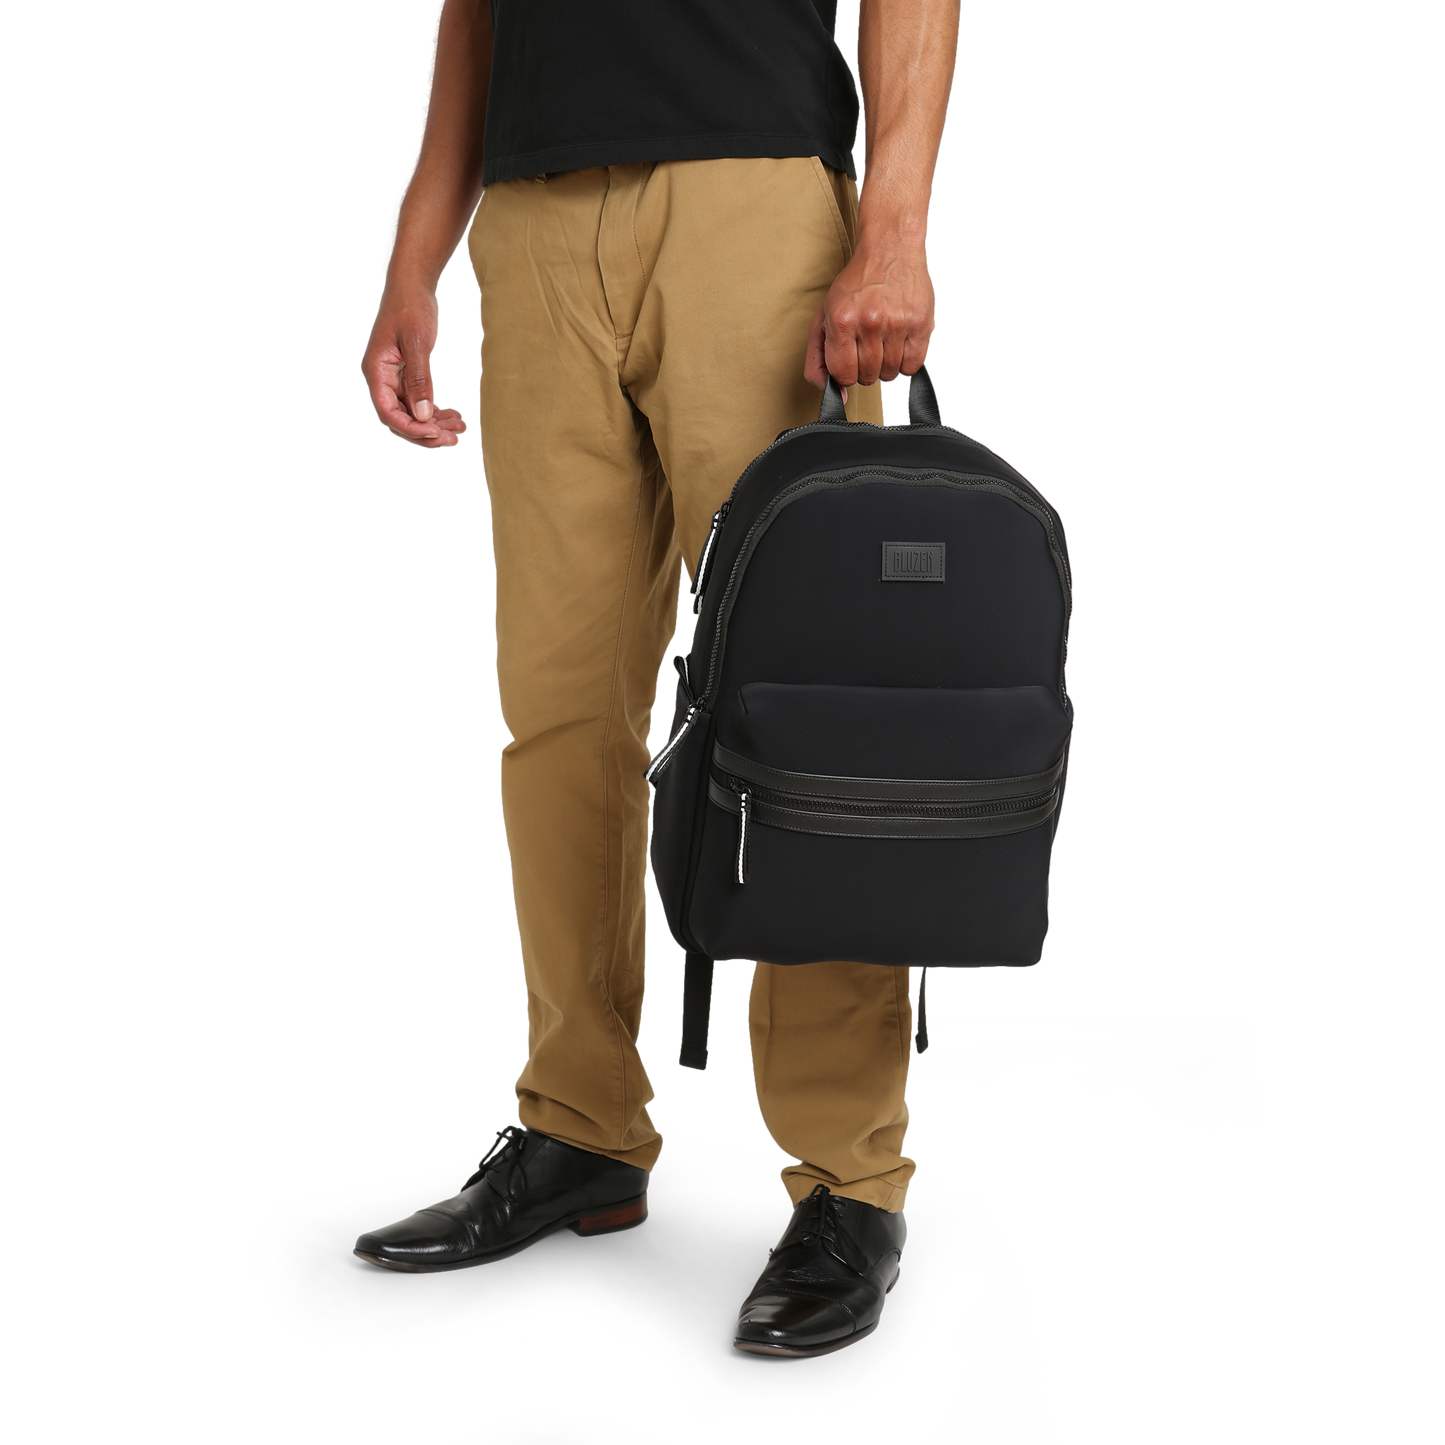 Neoprene Backpack in black